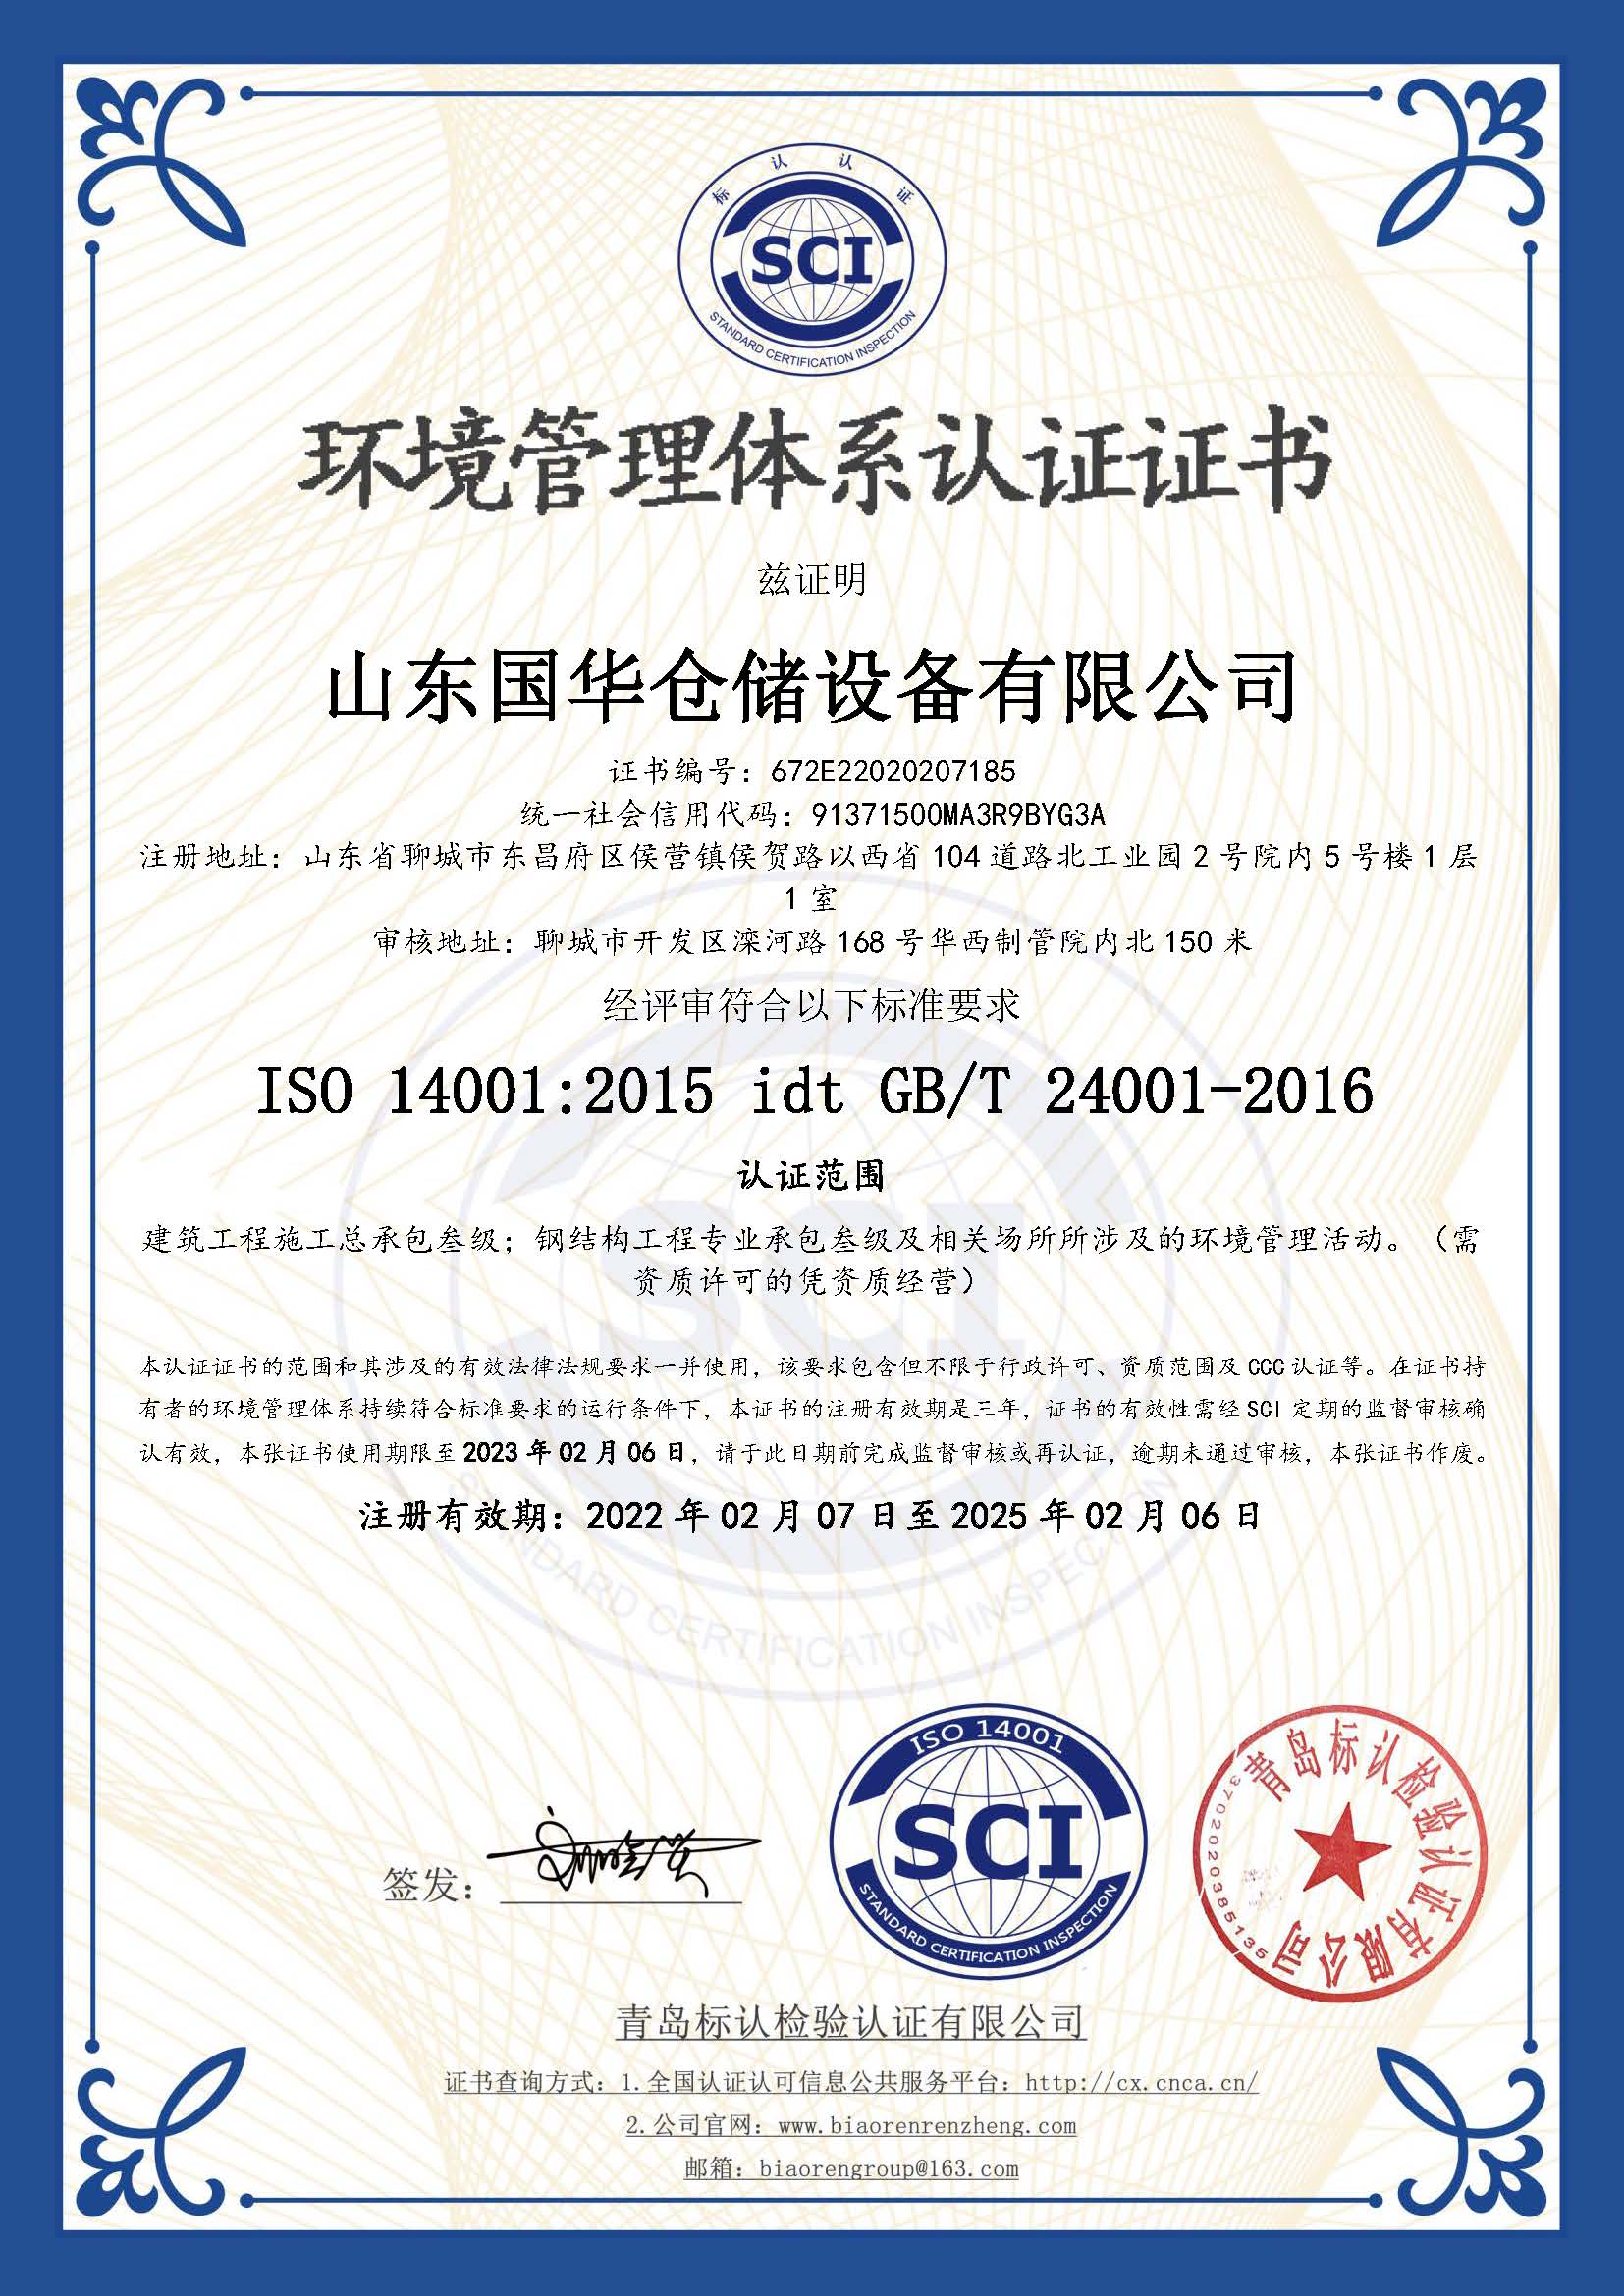 莆田钢板仓环境管理体系认证证书